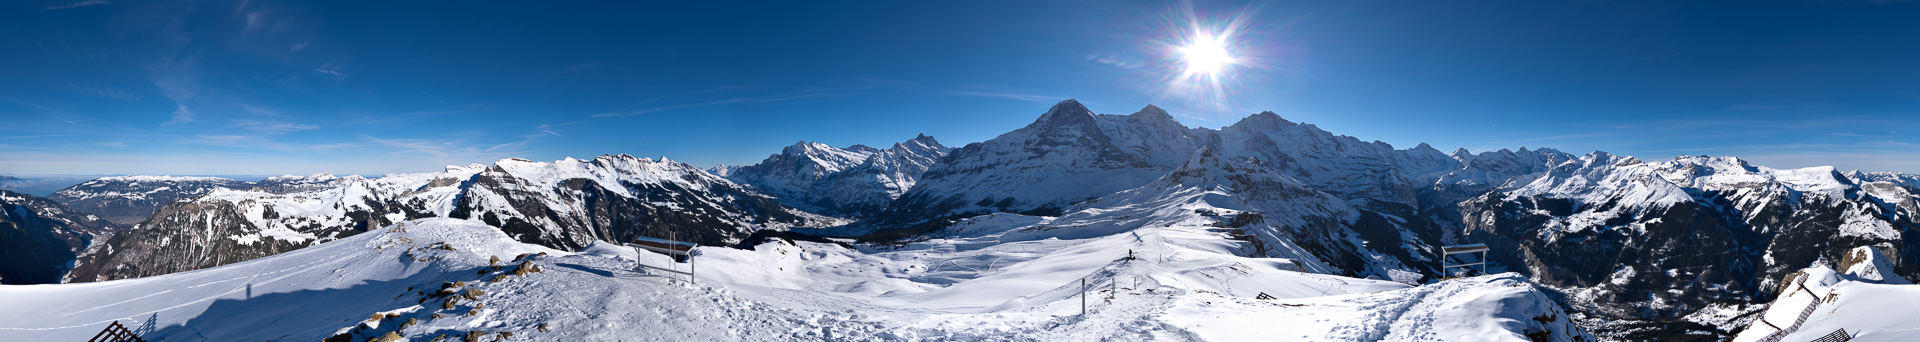 Panorama vom Rand des Skigebiets mit Blicks Lauterbrunnental.